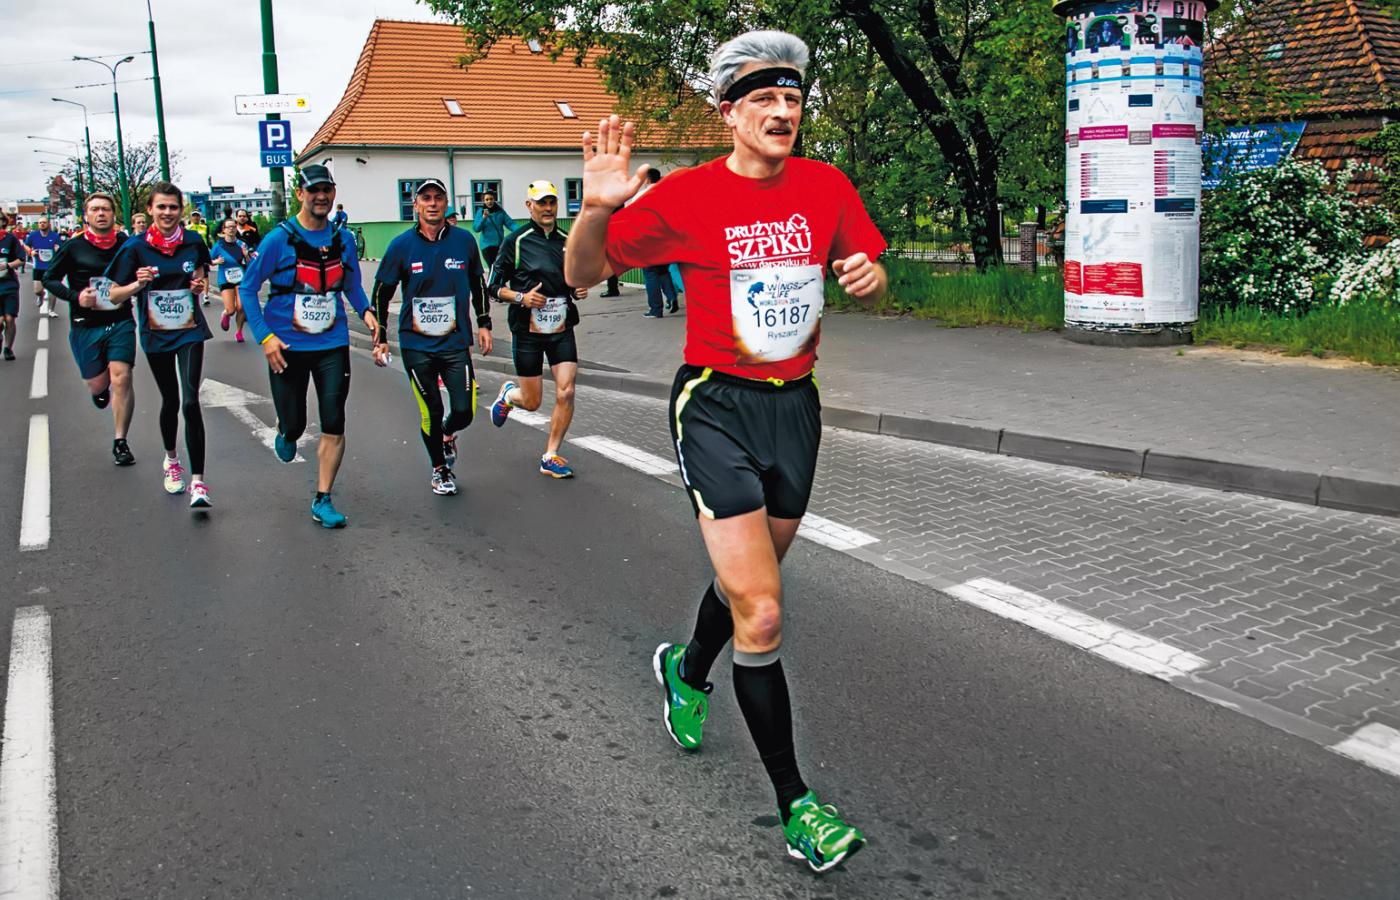 Prezydent Ryszard Grobelny, biegacz długodystansowy; Poznań, maj 2014 r.